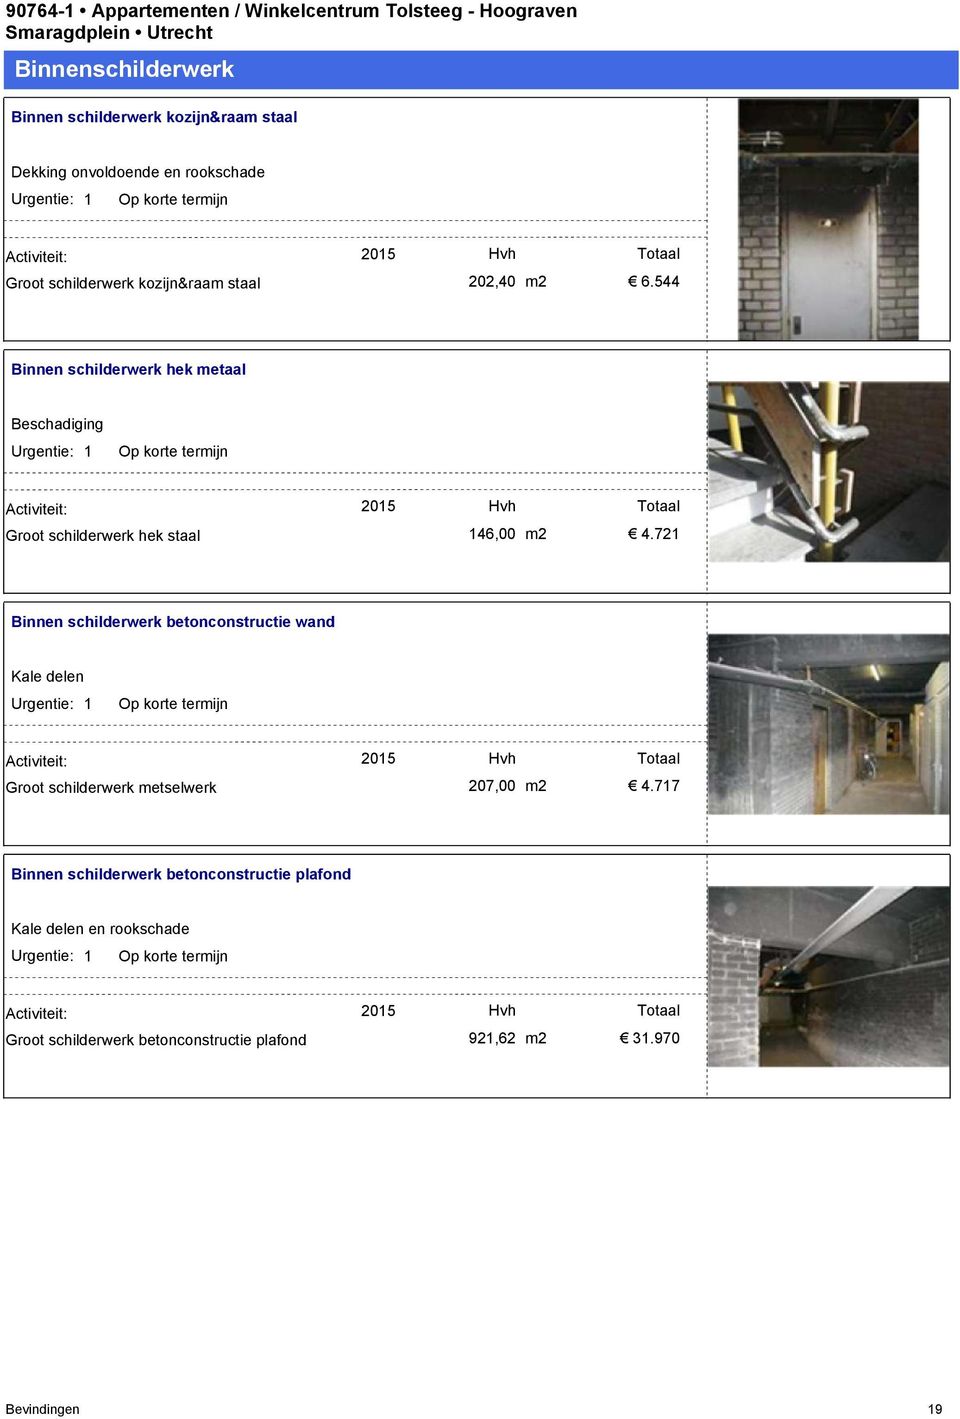 721 Binnen schilderwerk betonconstructie wand Kale delen Groot schilderwerk metselwerk 2015 207,00 m2 4.